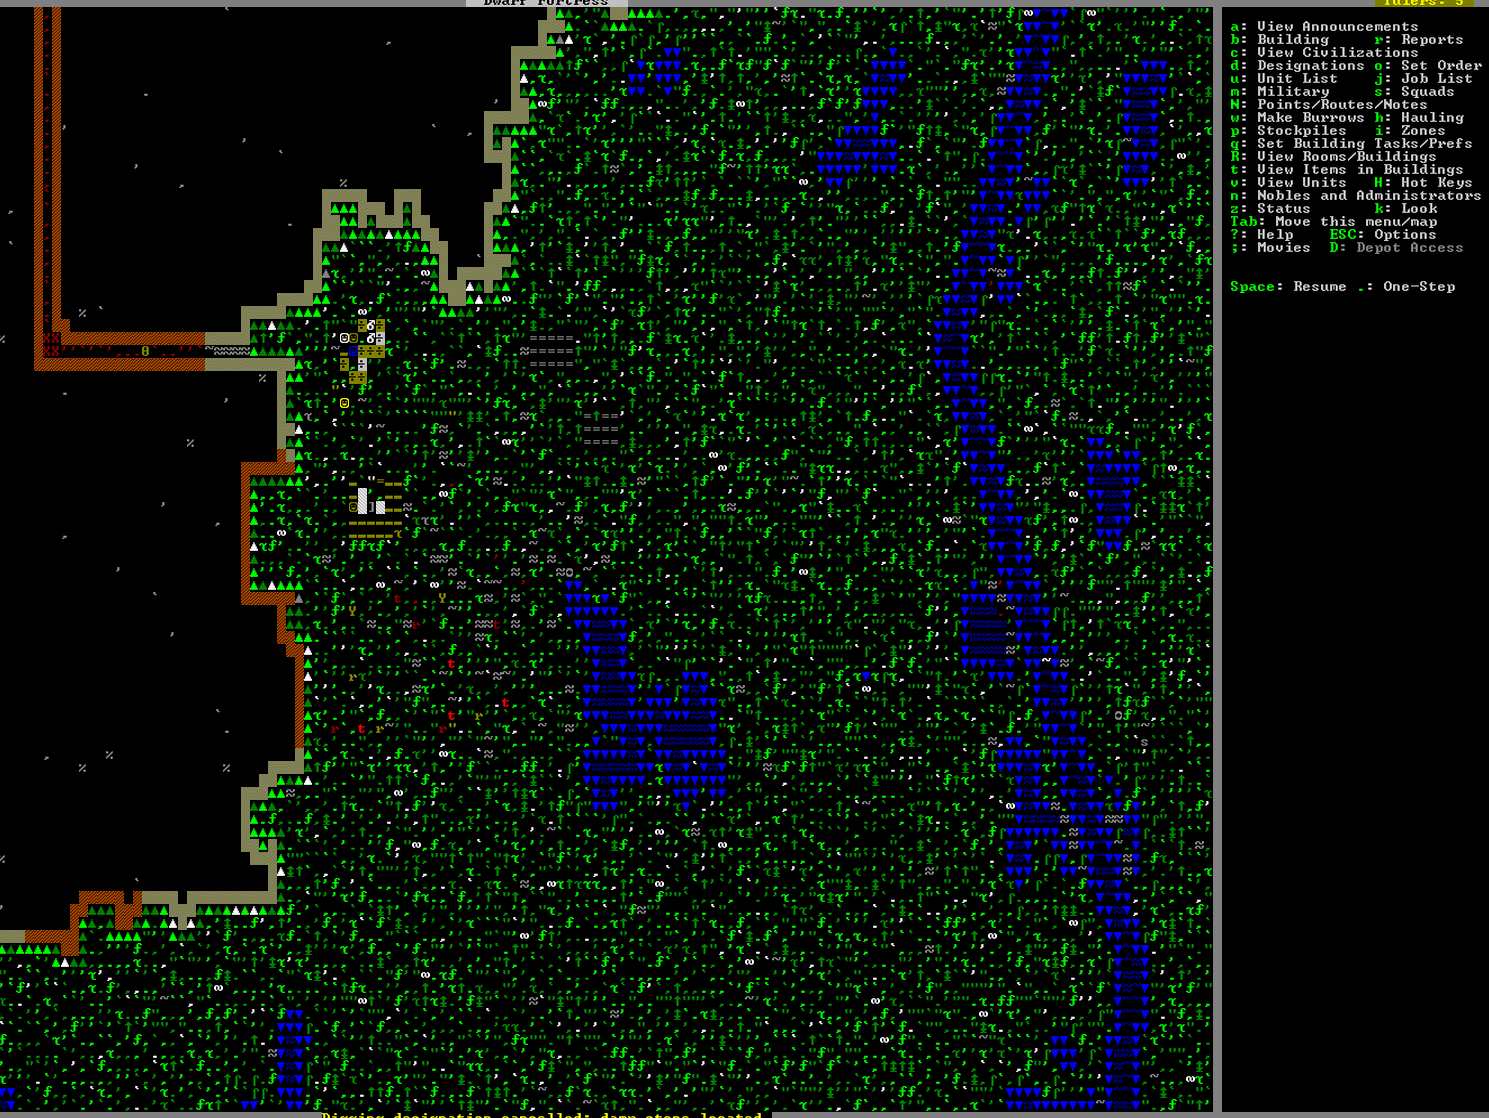 Čo je to ten "Dwarf Fortress"?